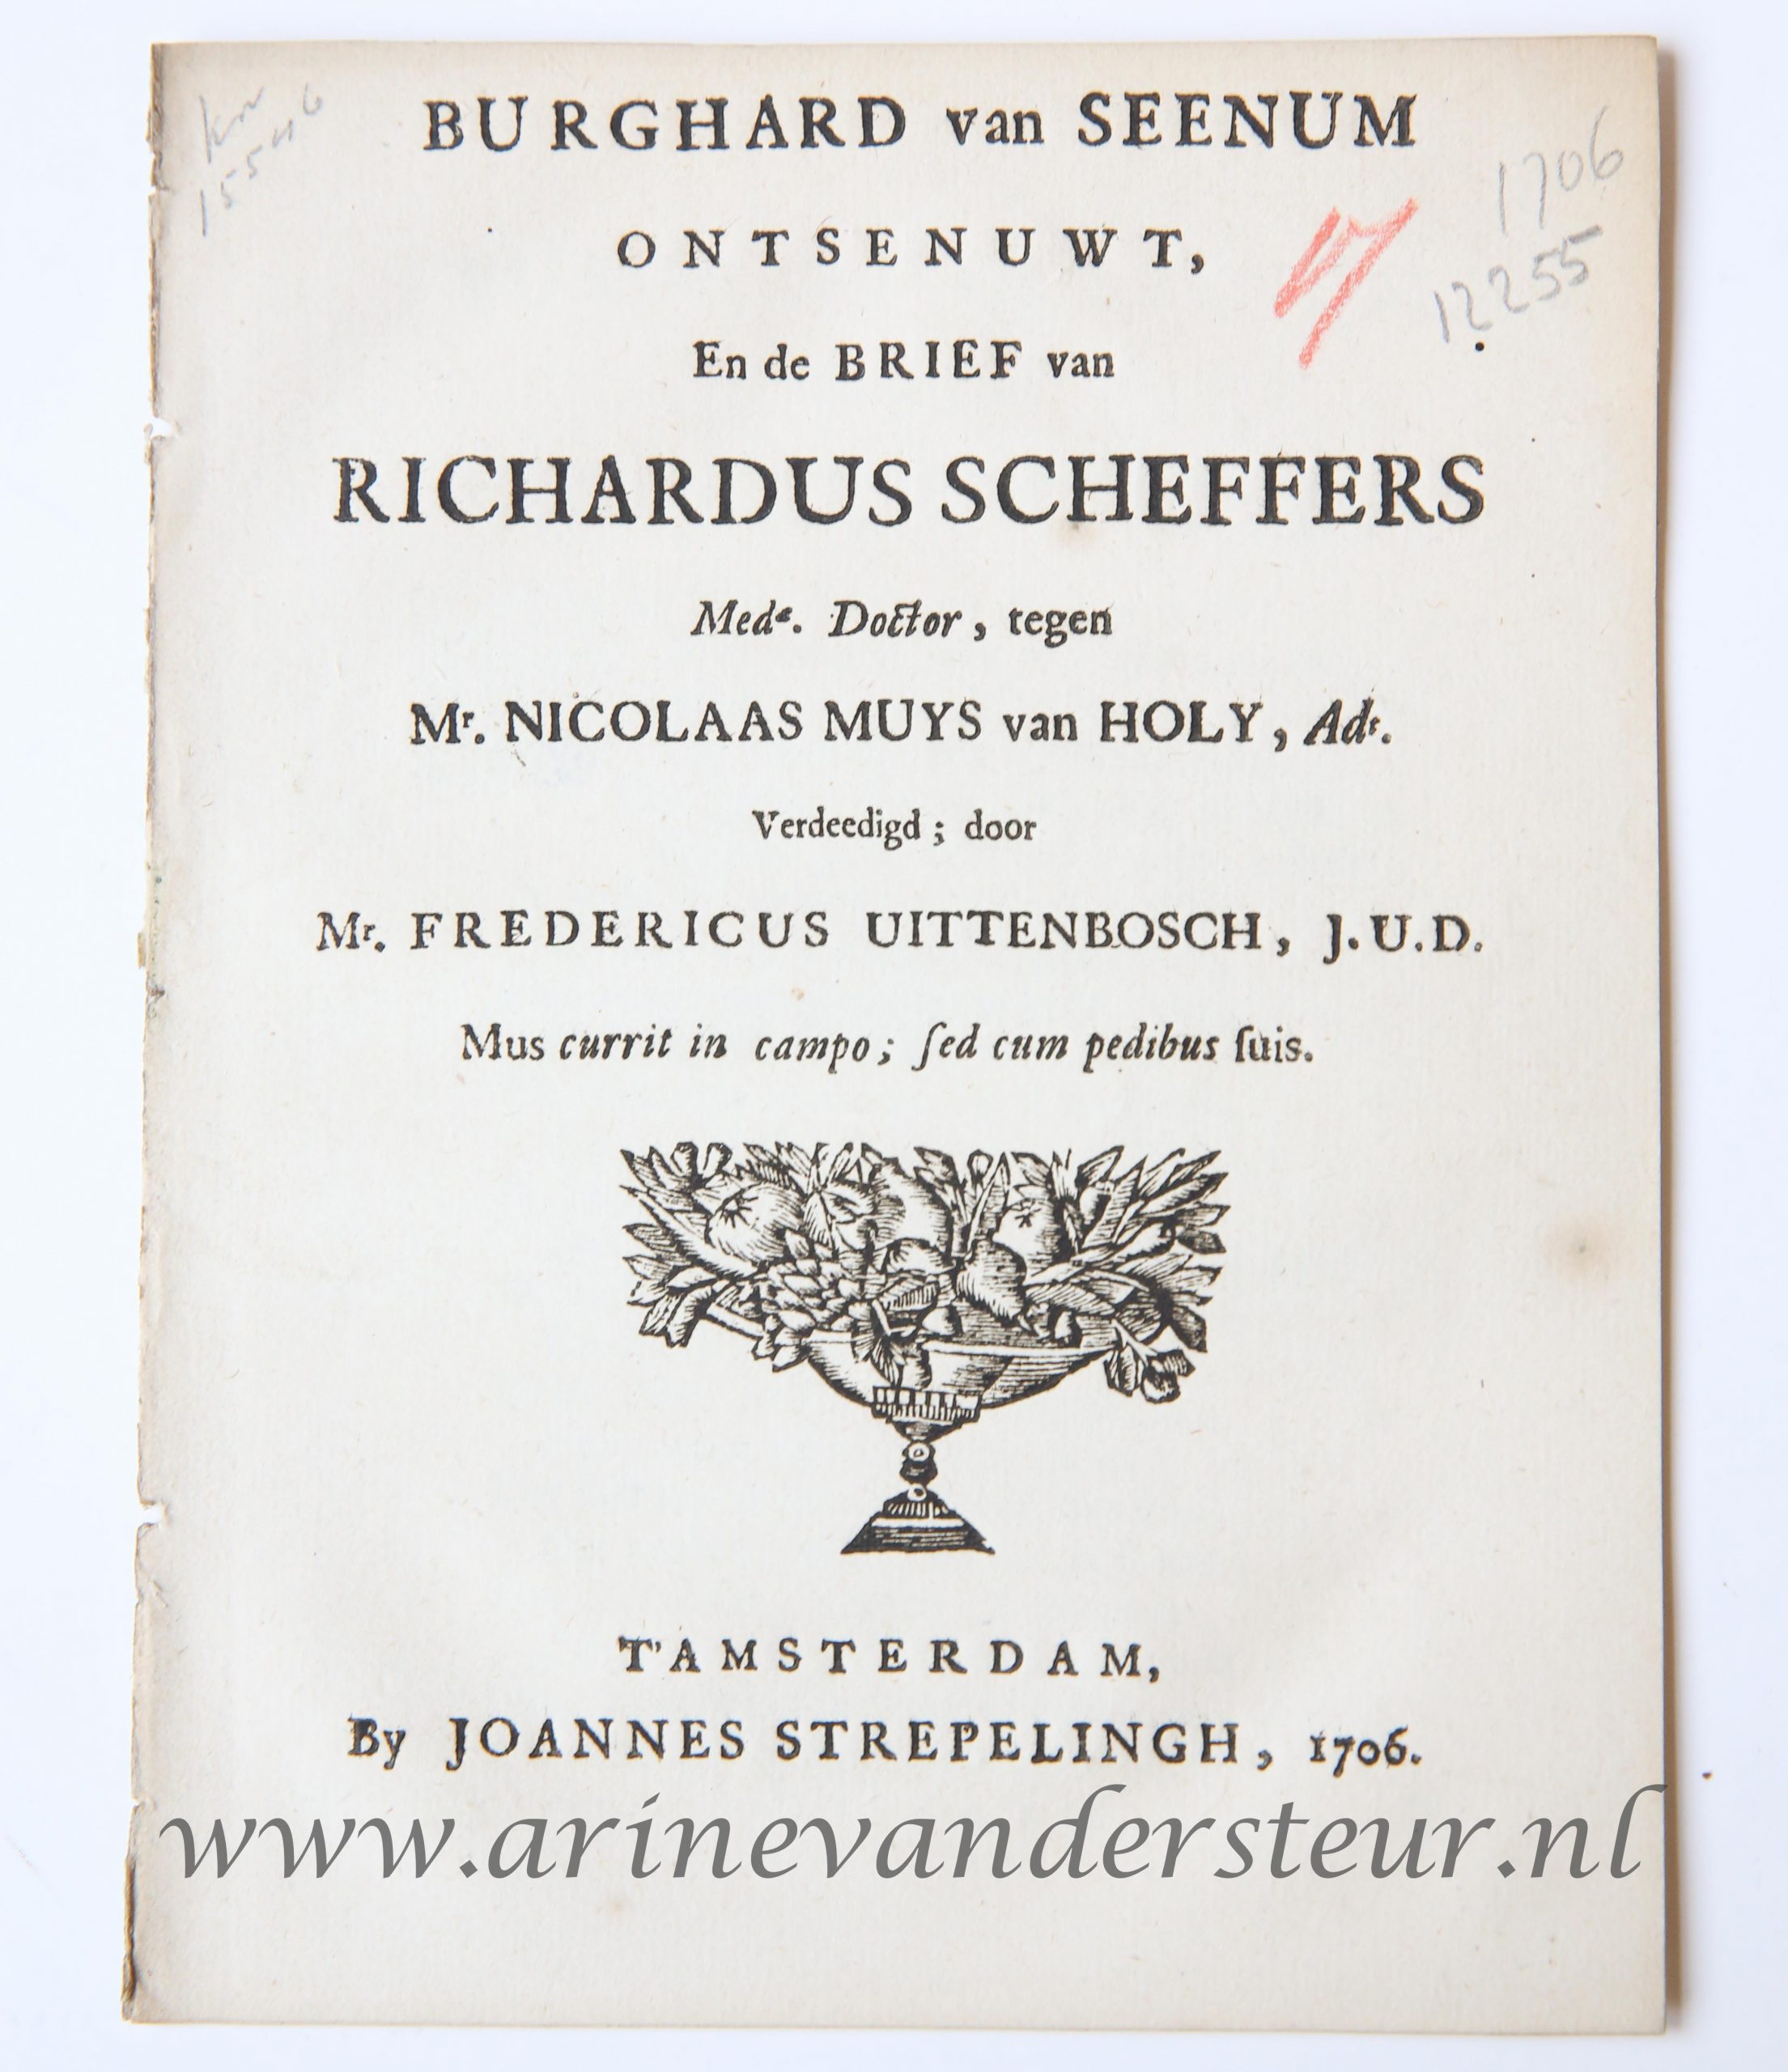 Burghard van Seenum ontsenuwt, en de brief van Richardus Scheffers med. doctor, tegen Mr. Nicolaas Muys van holy adt verdeedigd door Mr. Fredericus Uittenbosch j.u.d. Amsterdam, J. Streppelingh, 1706. 4º: 11p.